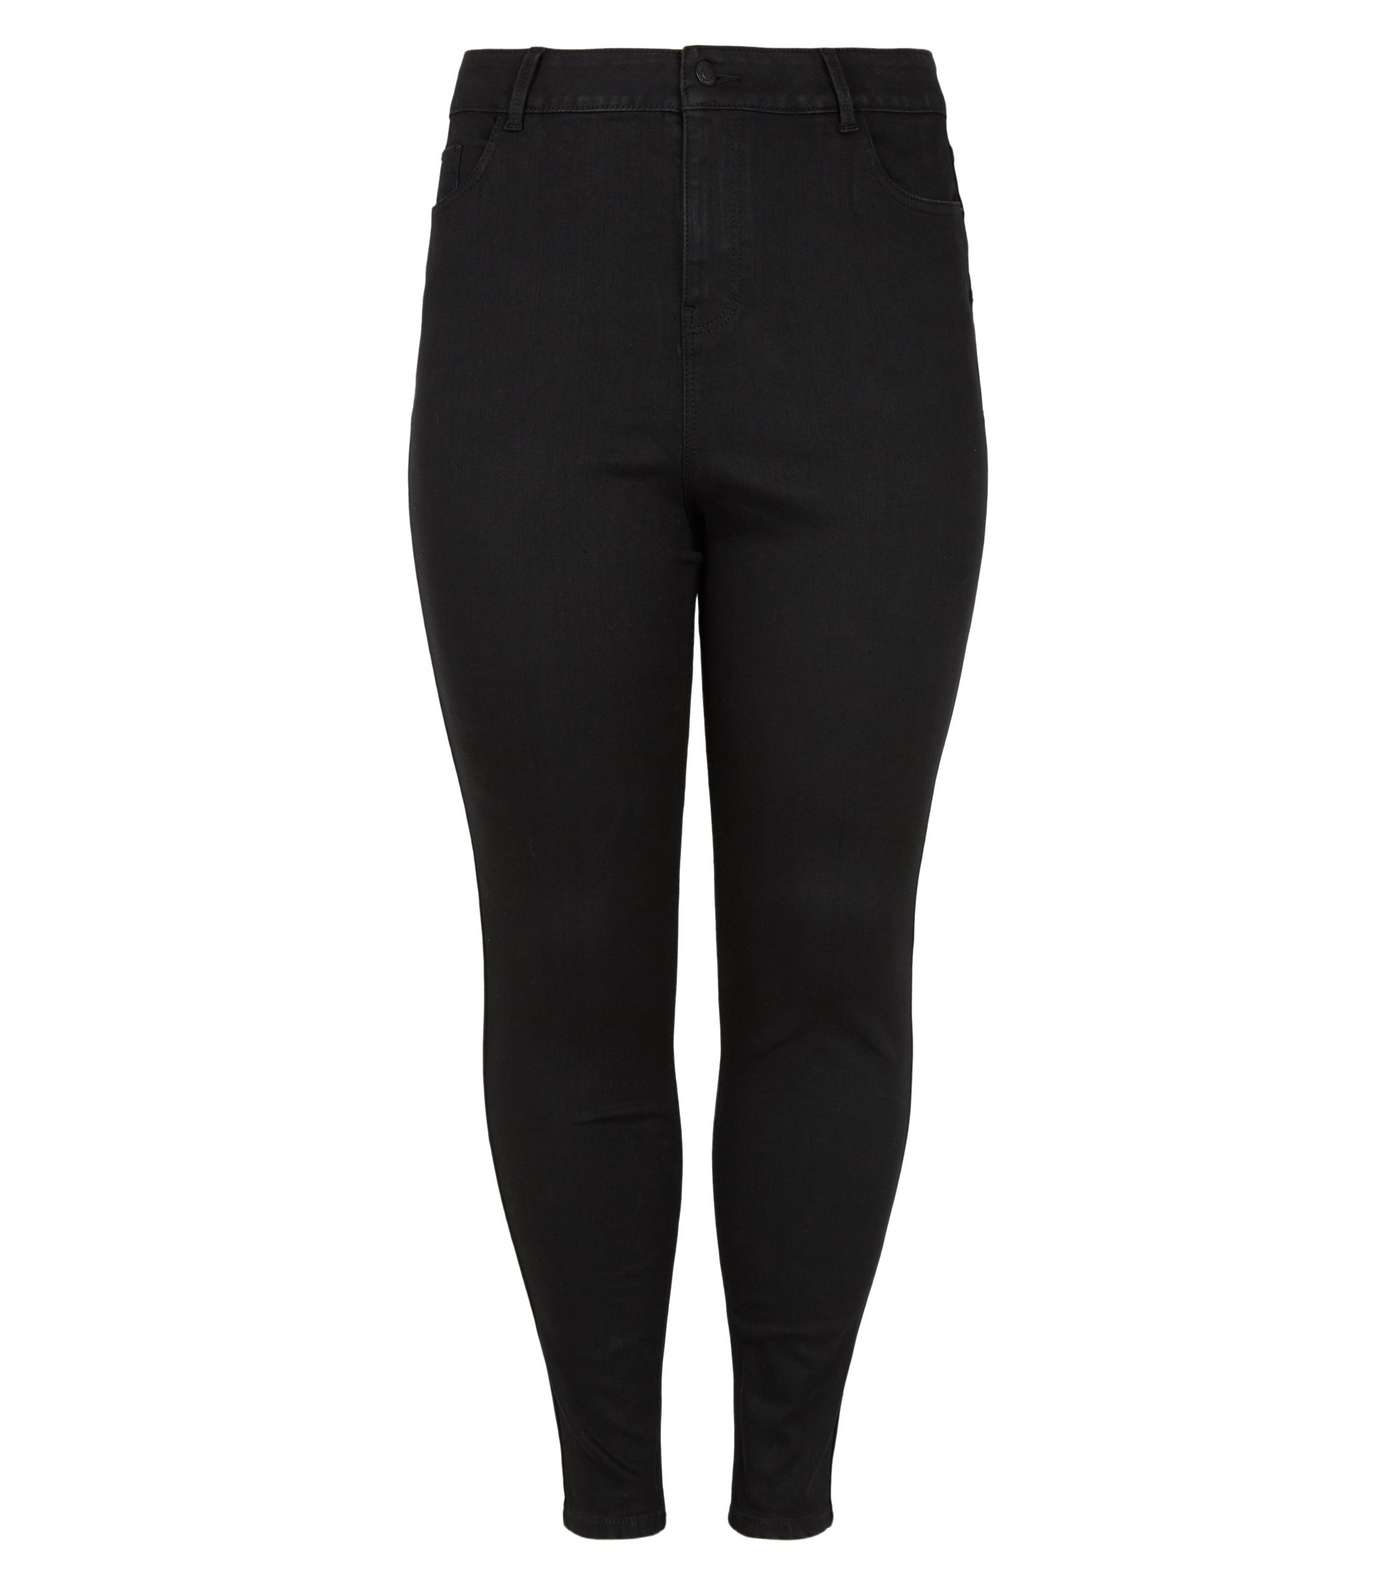 Curves Black Lift & Shape Jenna Skinny Jeans Image 5